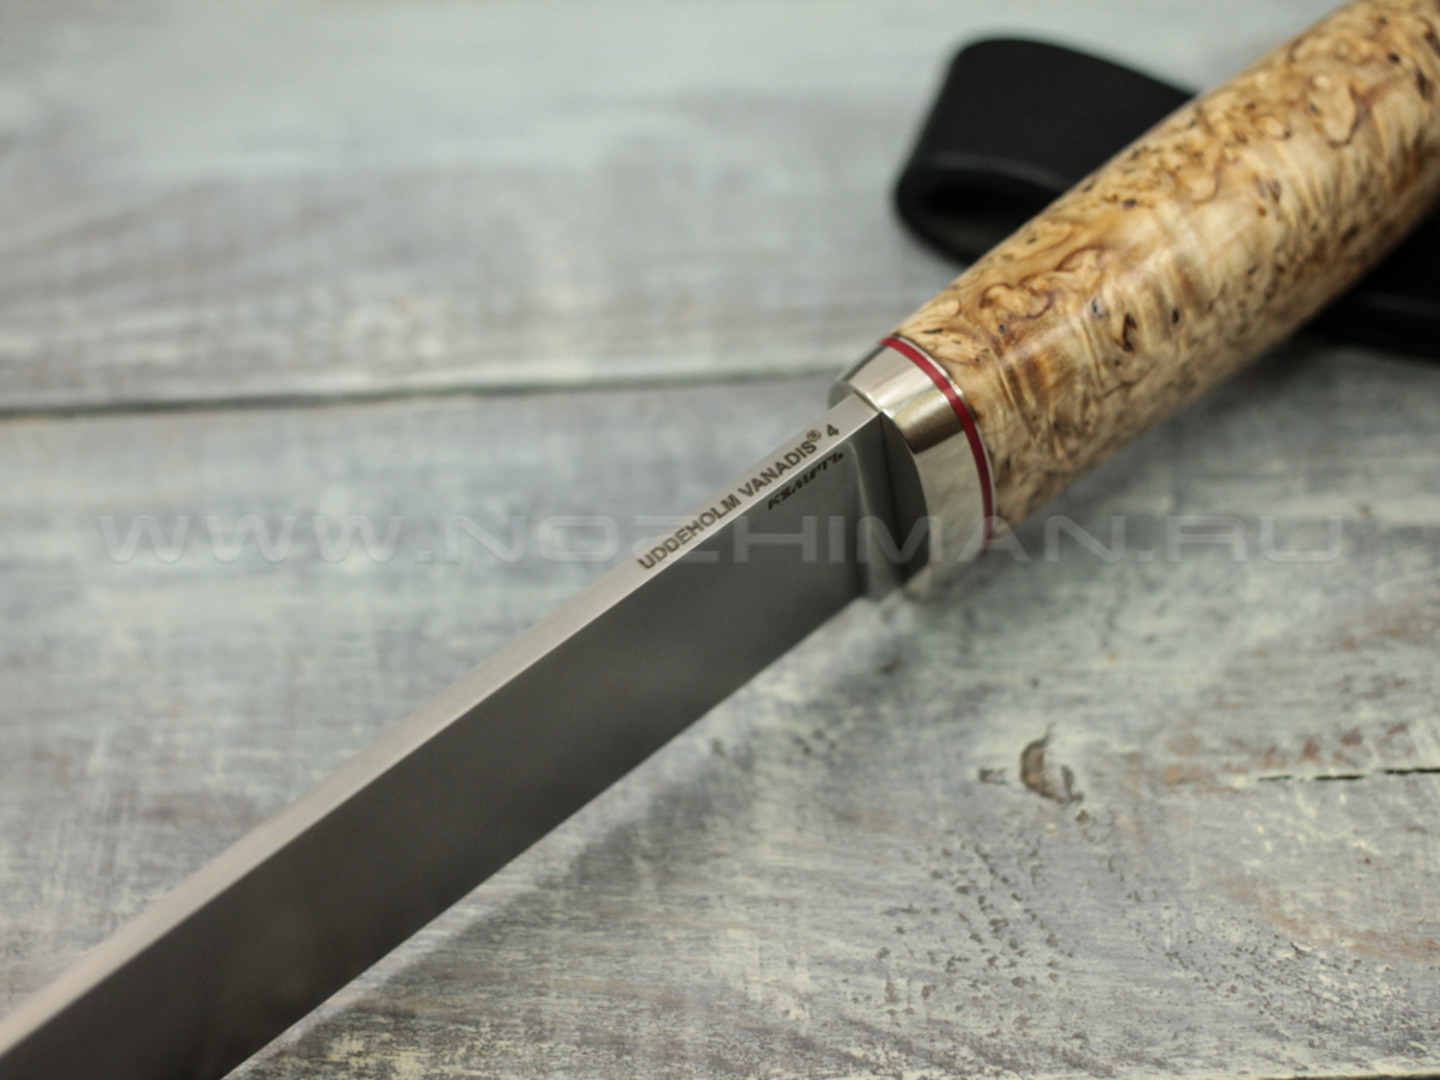 Нож "Консул" Vanadis 4, стаб. карельская береза